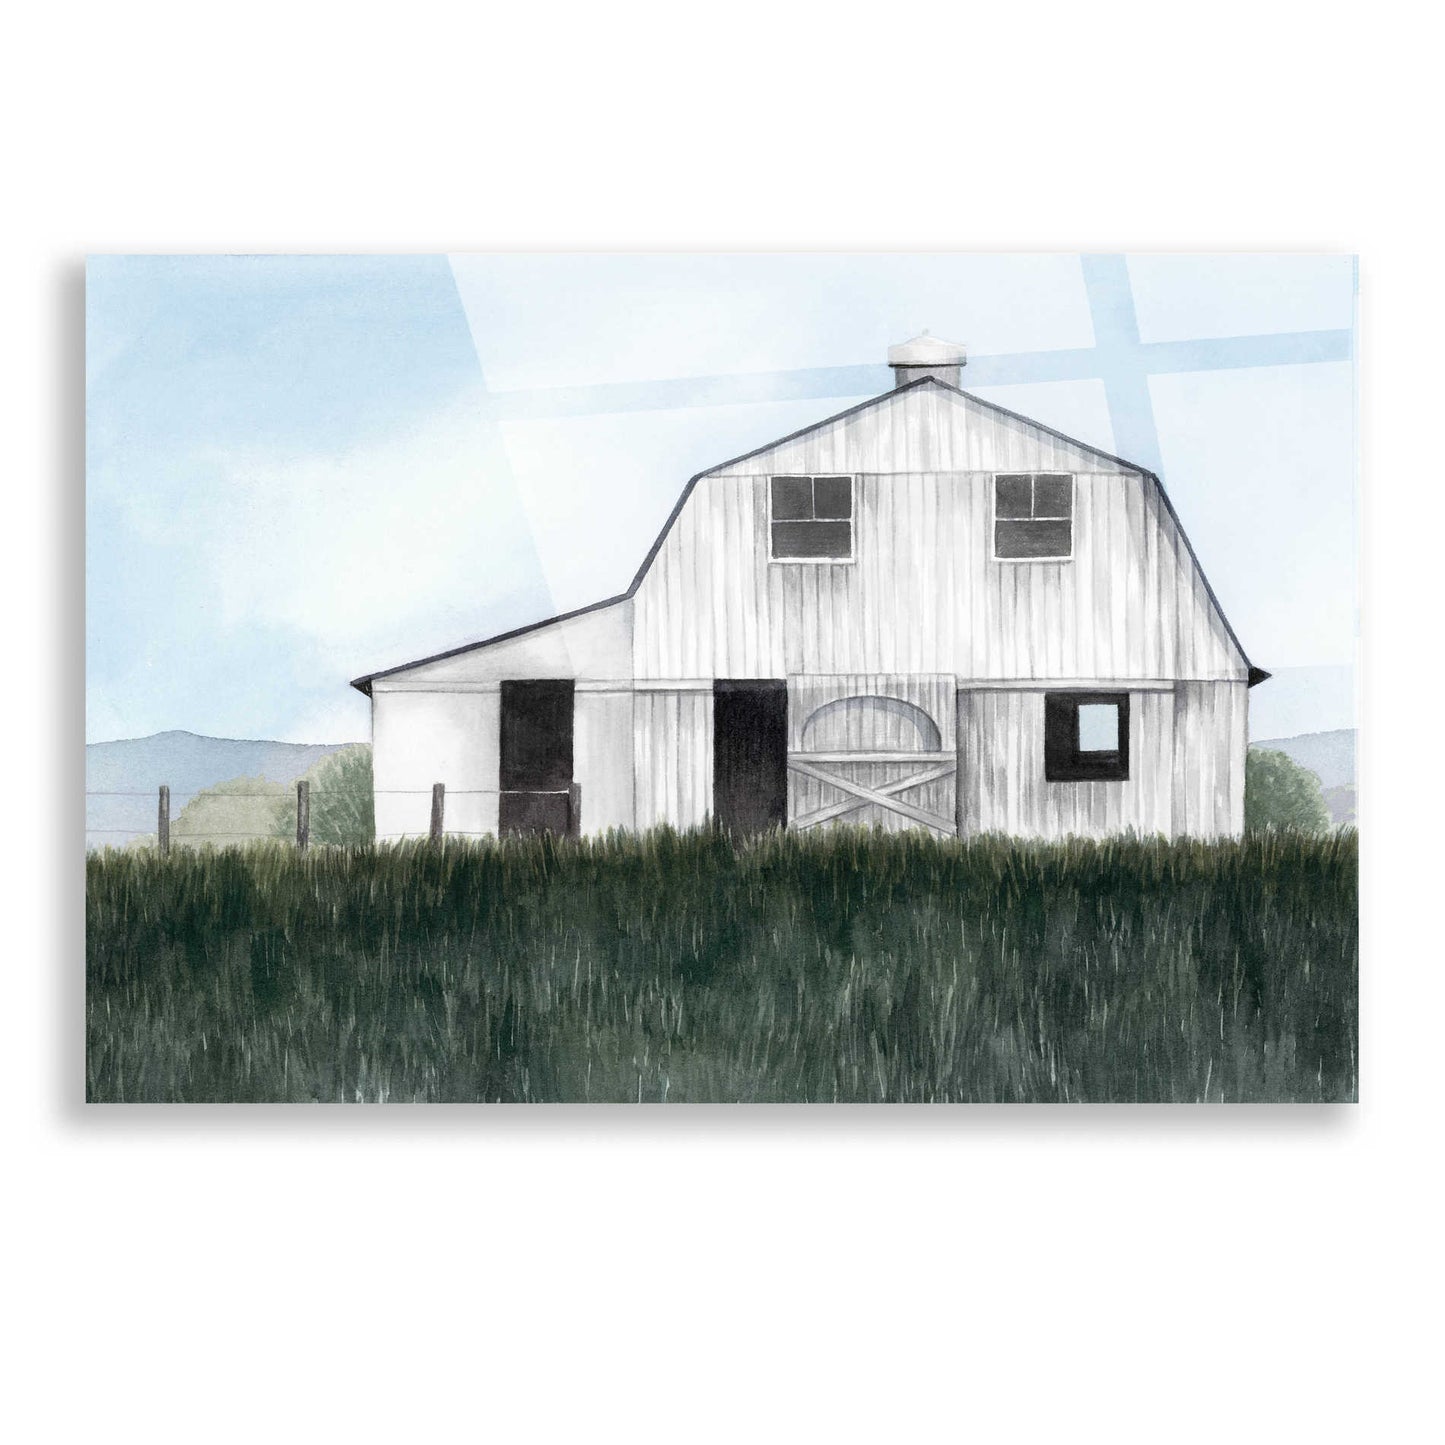 Epic Art 'Bygone Barn II' by Grace Popp, Acrylic Wall Glass,16x12